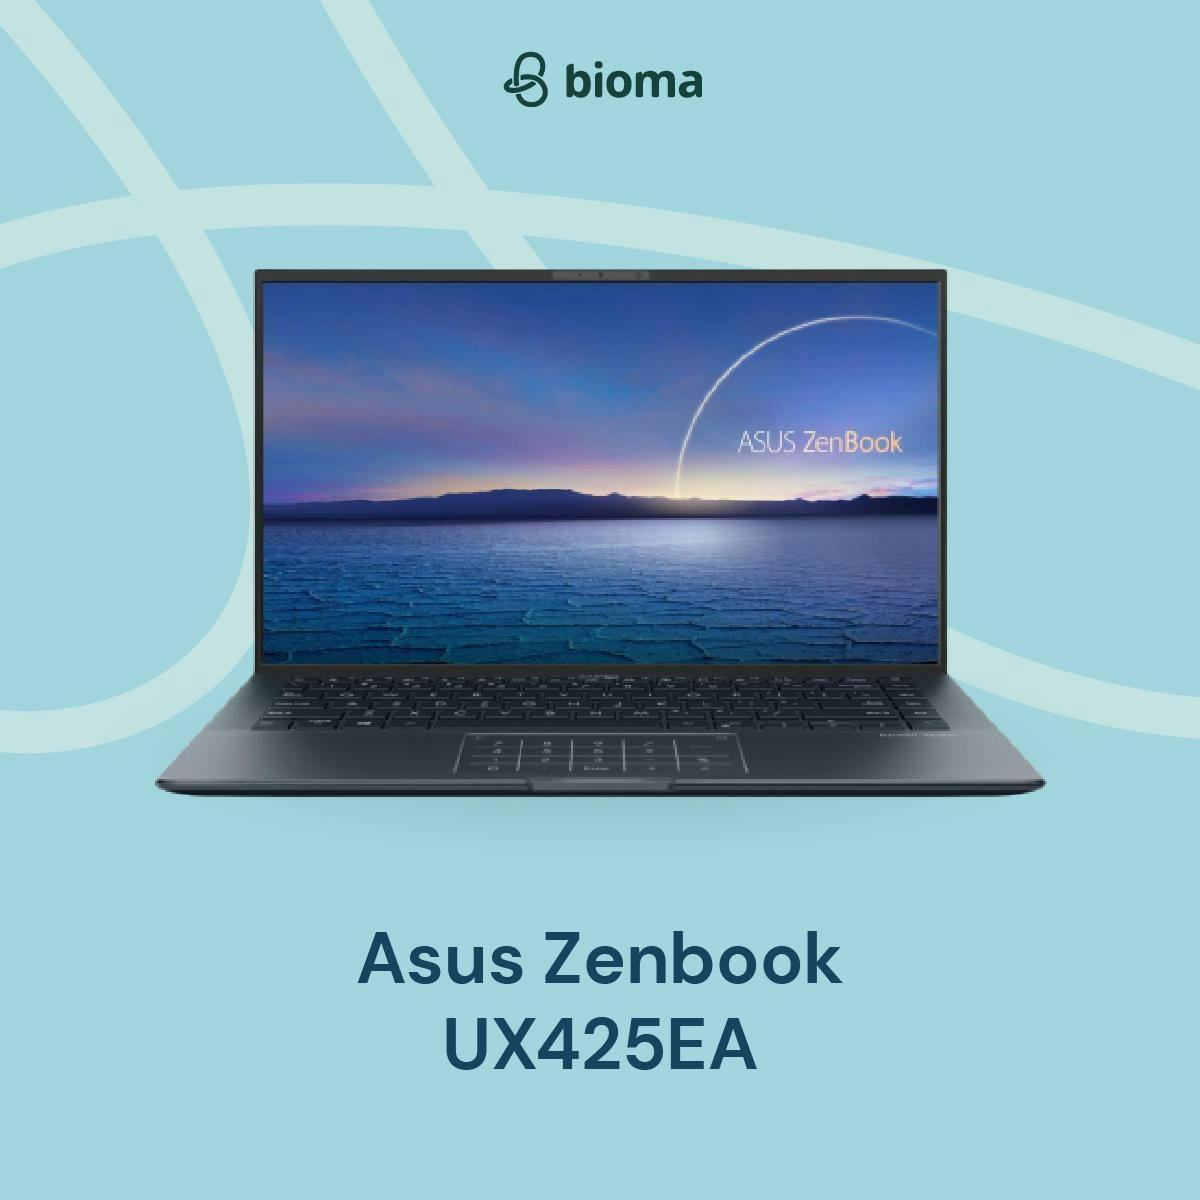 Asus Zenbook UX425EA